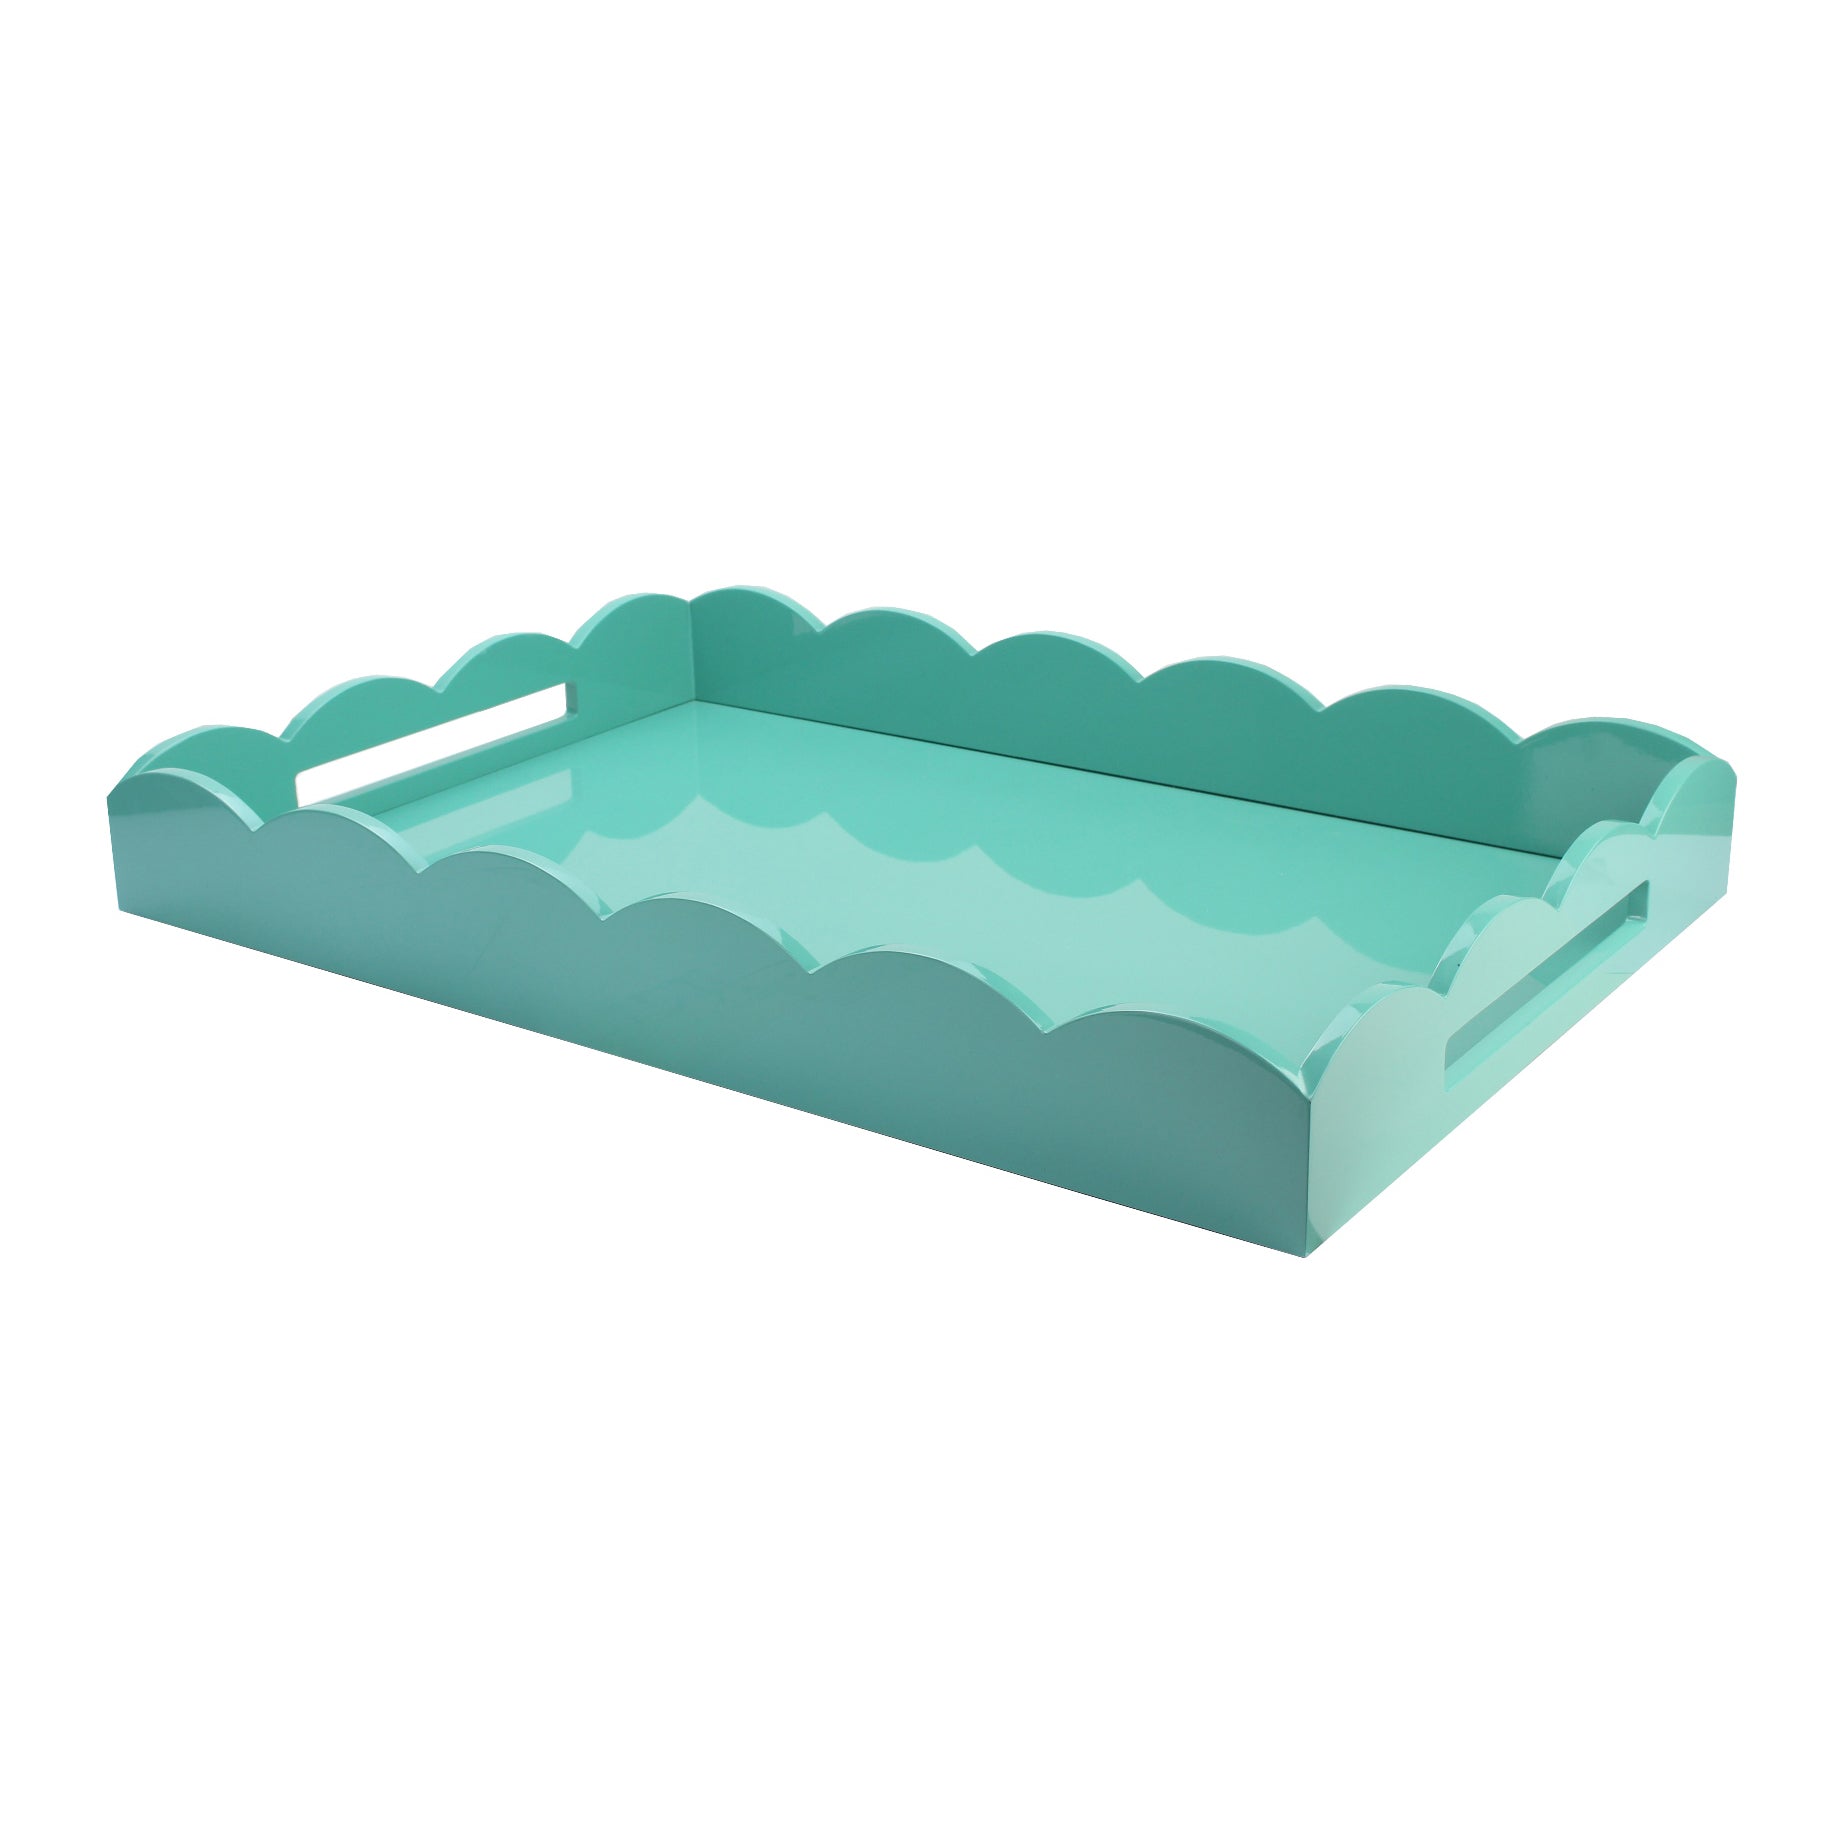 Scalloped tray | medium turquoise | Osski